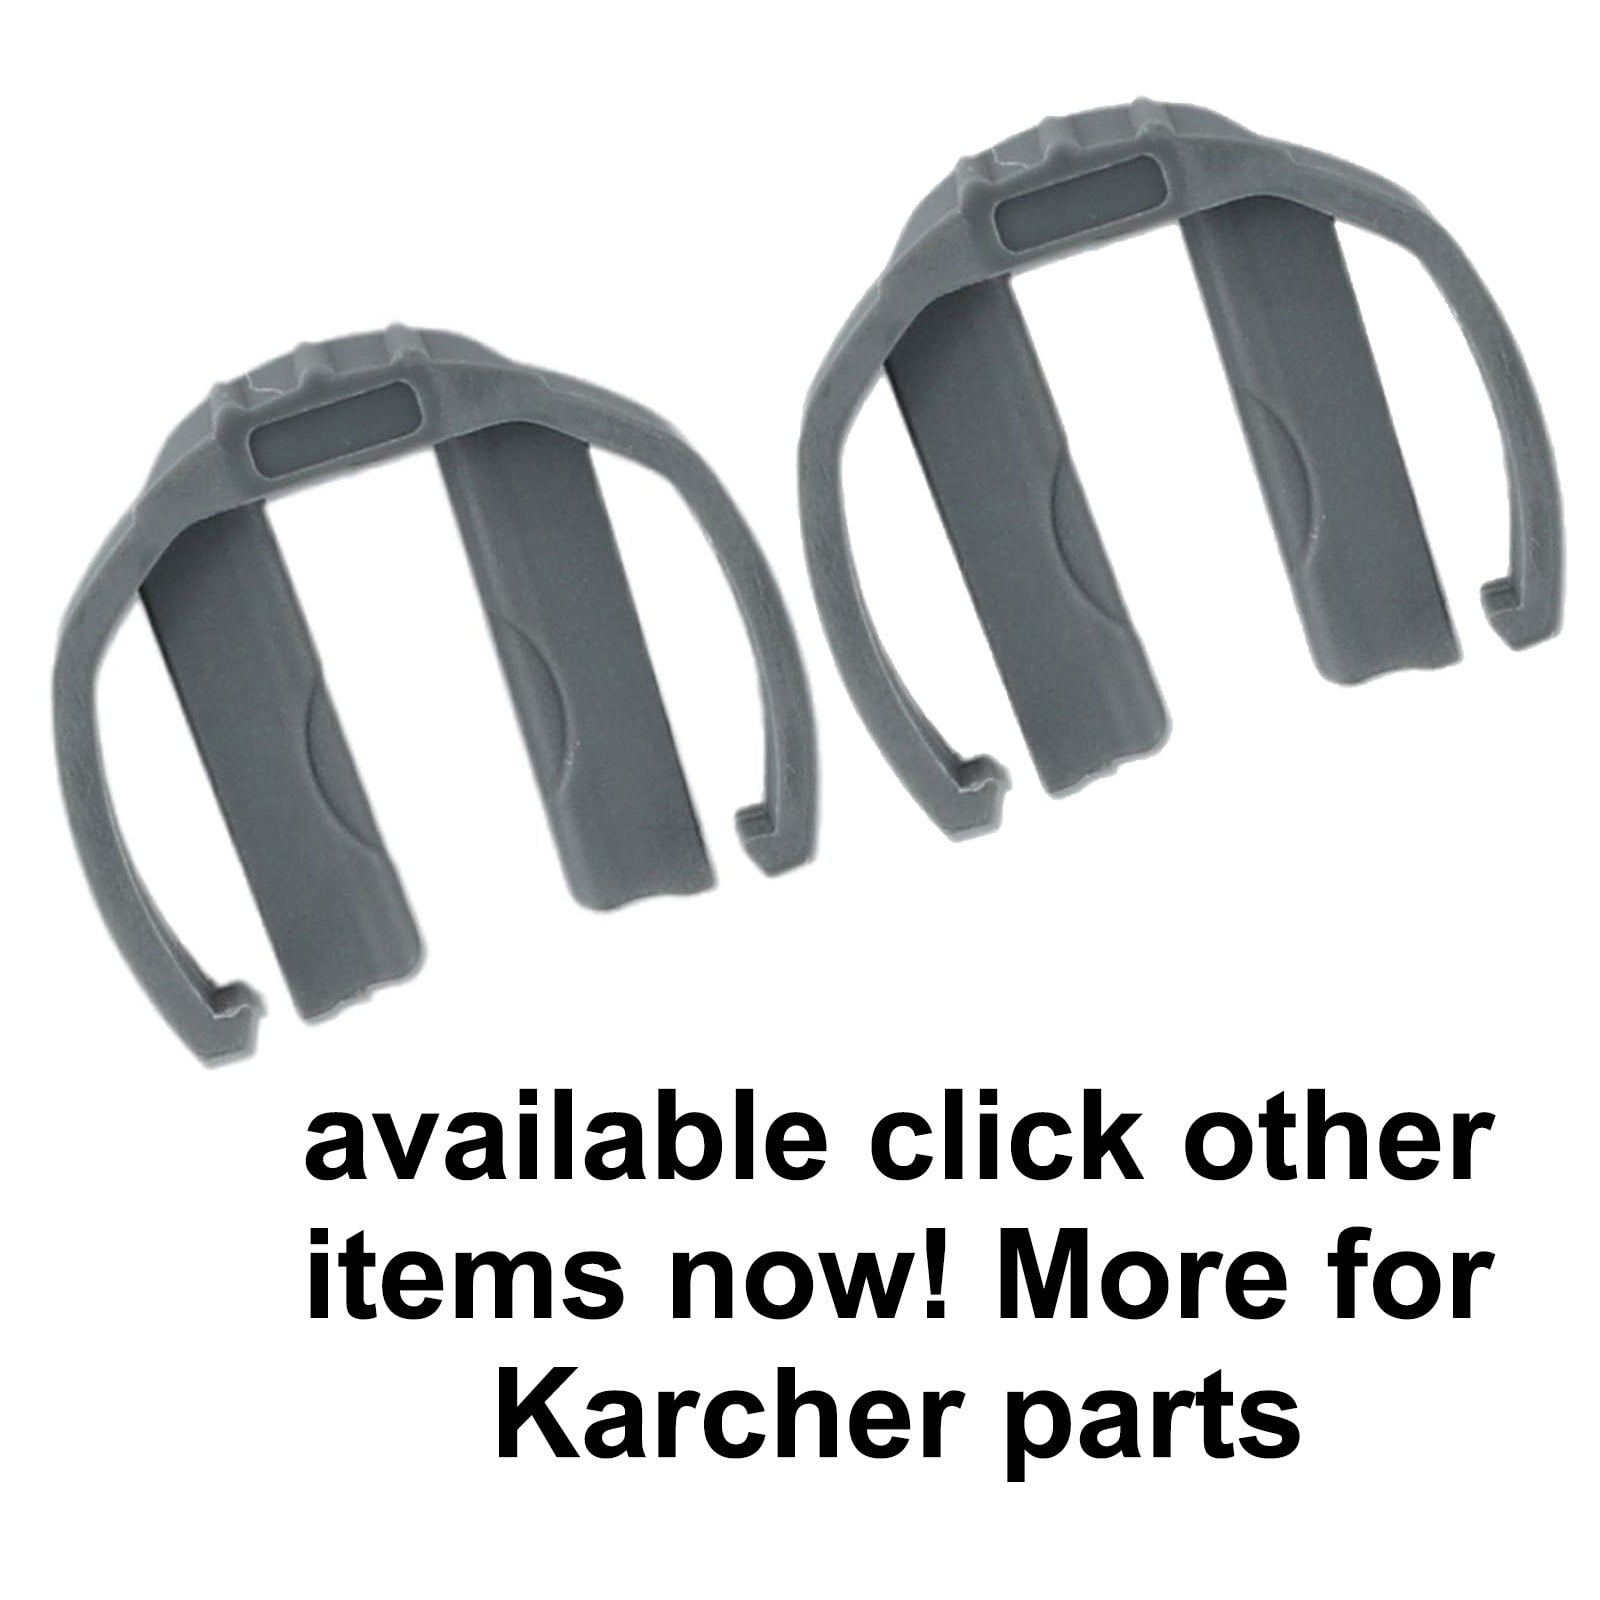 For Karcher K2 K3 K7 Pressure Washer Trigger & Hose Replacement C Clips 